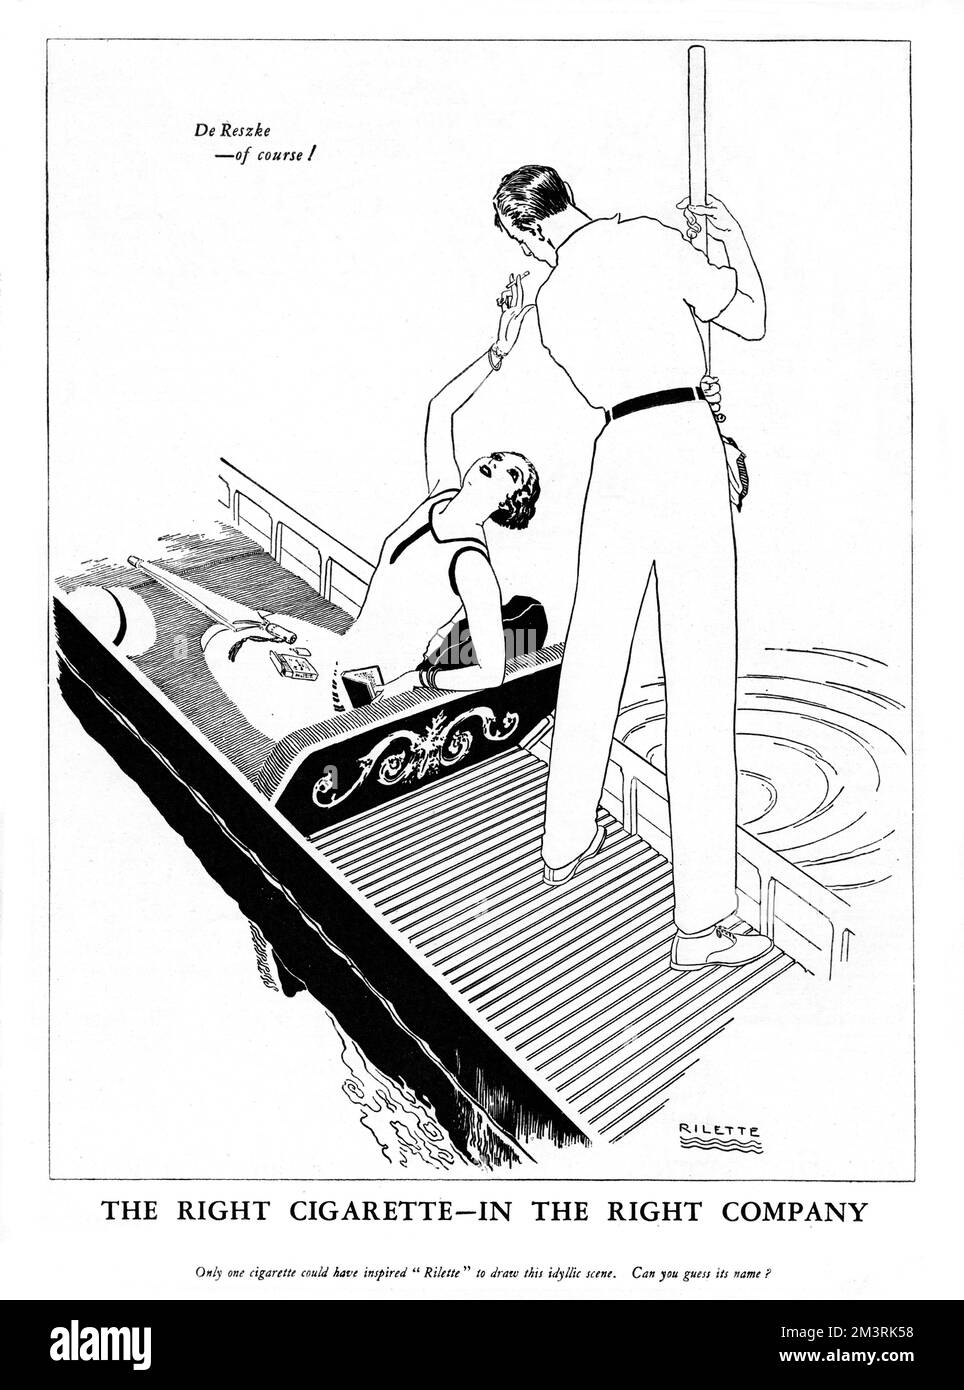 "Une seule cigarette aurait pu inspirer Rilette pour dessiner cette scène idyllique. Pouvez-vous deviner son nom ? » 1928 Banque D'Images